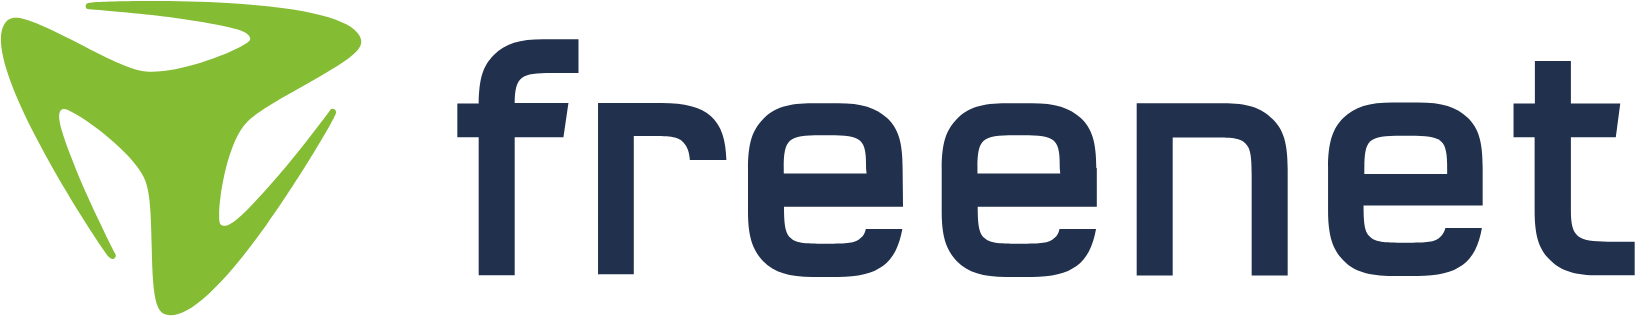 Freenet logo large (transparent PNG)